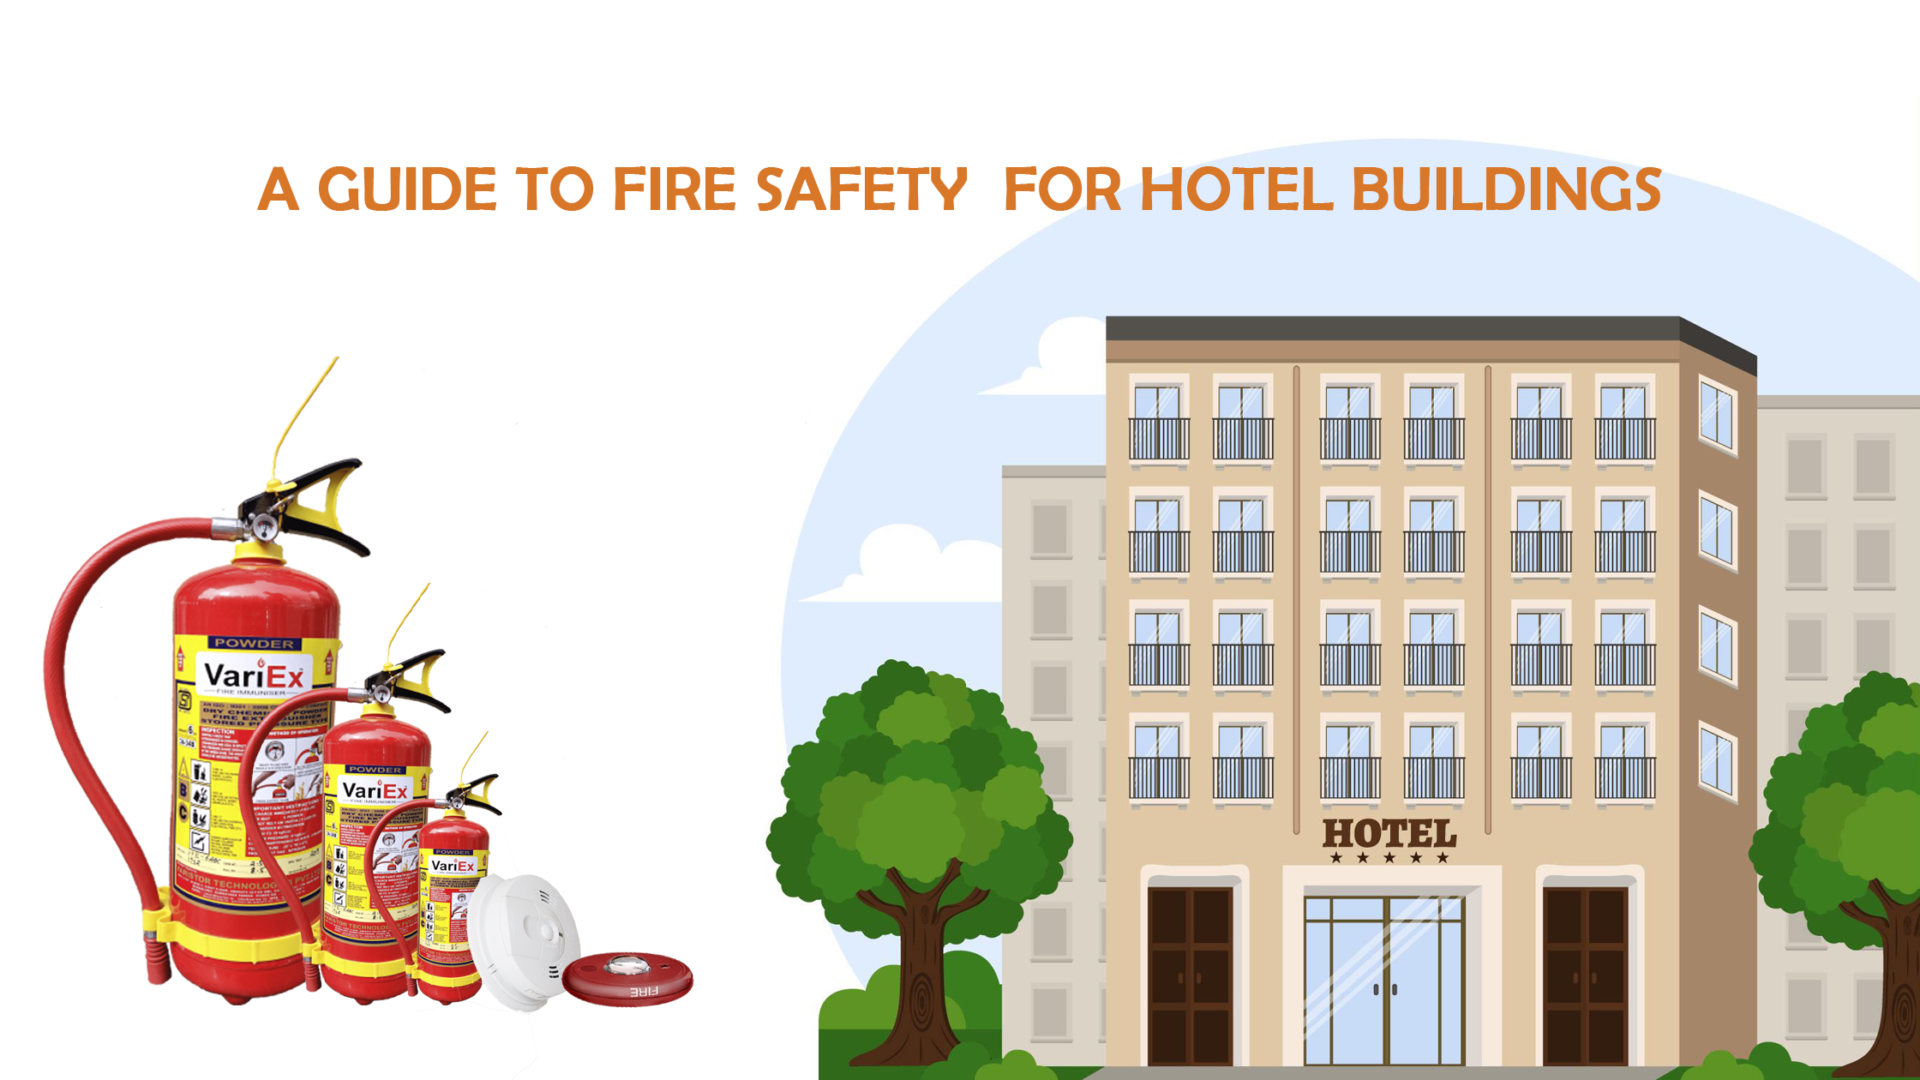 Guía de seguridad contra incendios para edificios de hoteles - Seguridad contra incendios en hoteles 7